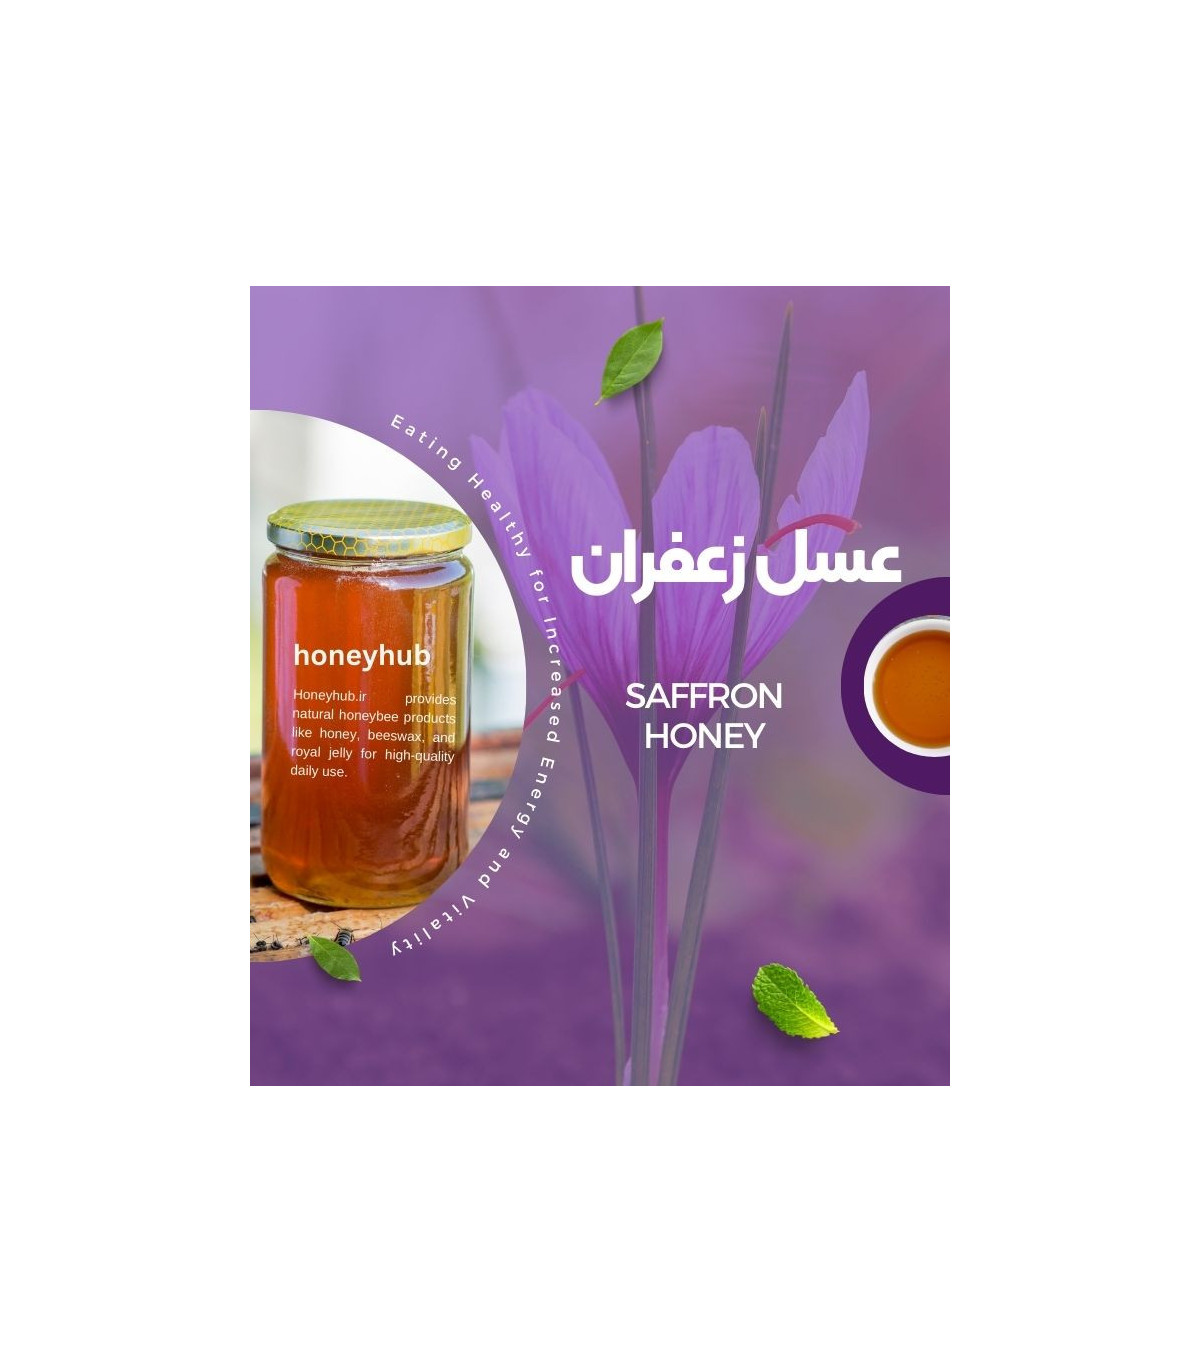 Tarangabin honey